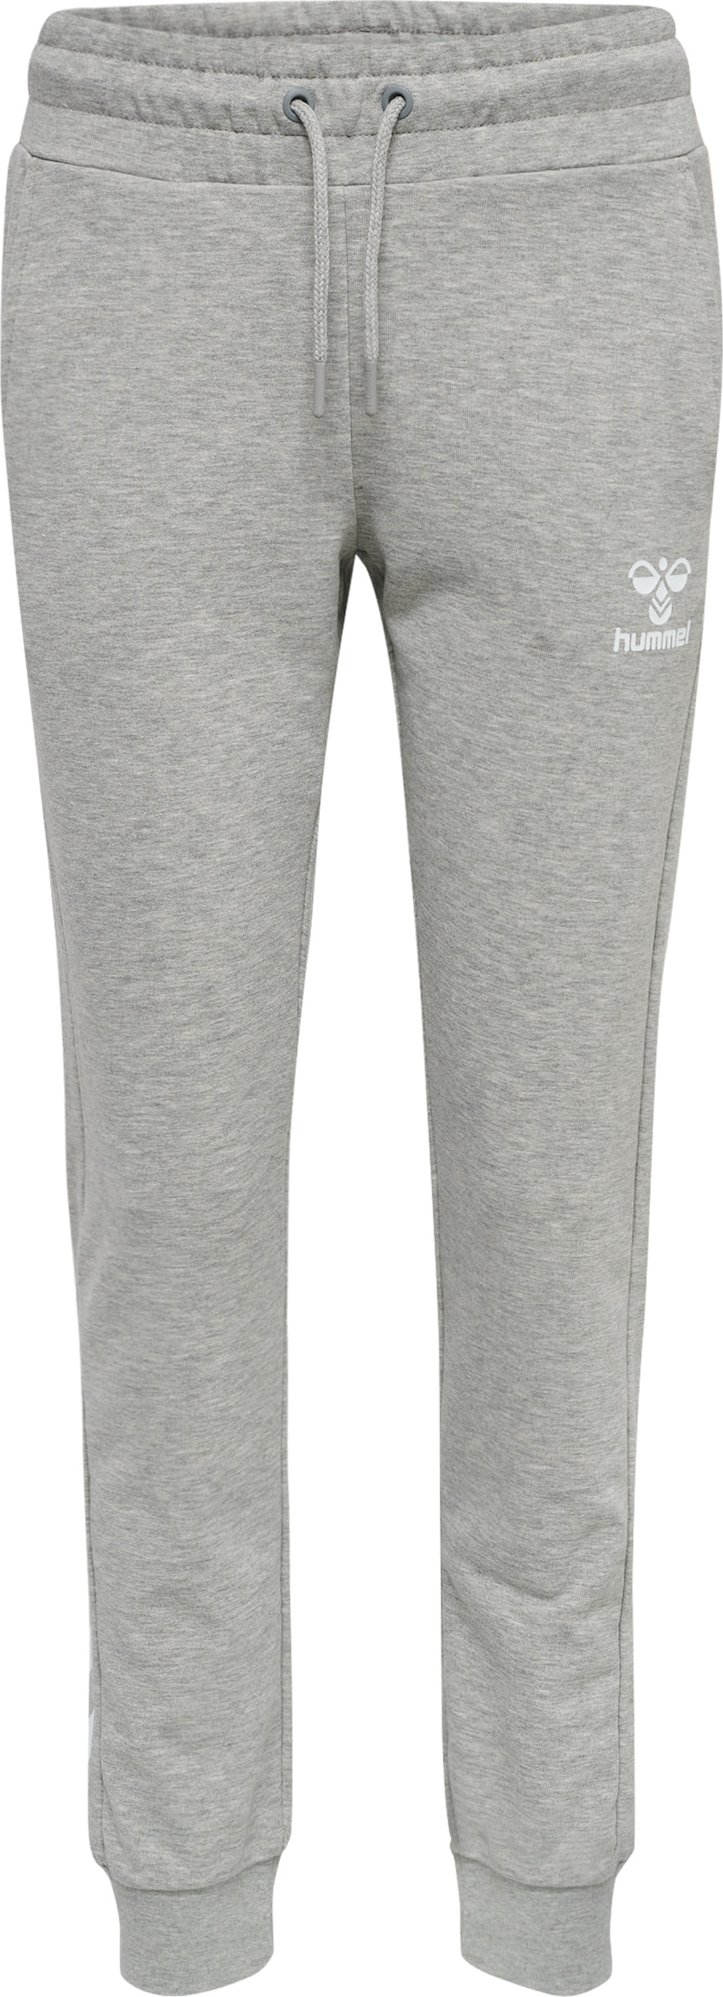 Sportovní kalhoty 'Noni 2.0' Hummel šedý melír / bílá